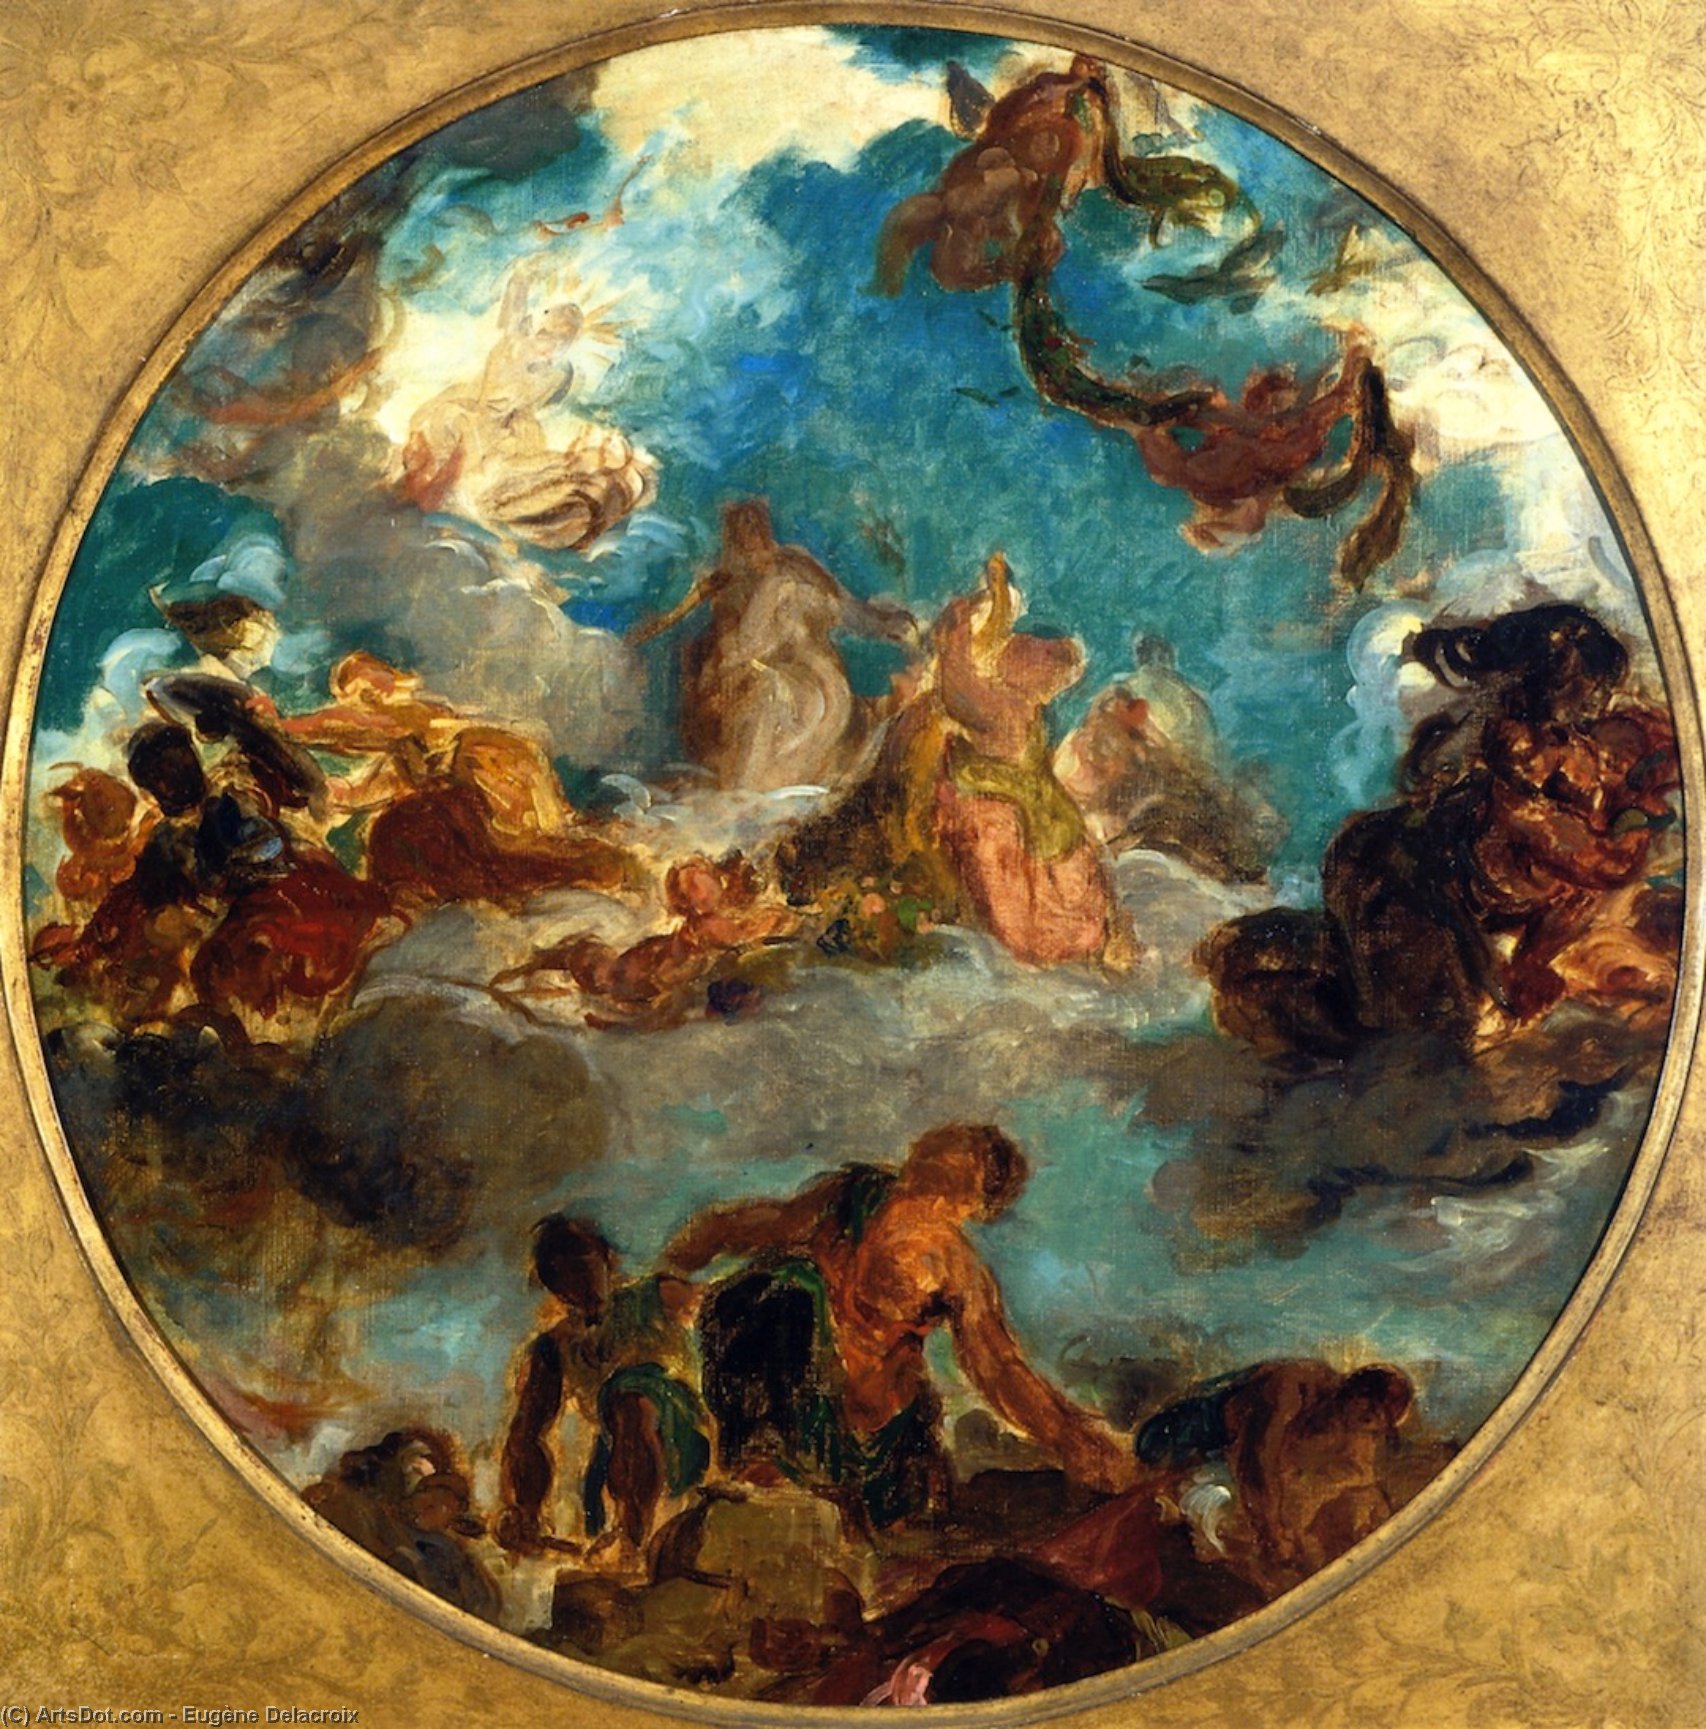 WikiOO.org – 美術百科全書 - 繪畫，作品 Eugène Delacroix - 和平 来了  到  安慰  男人  和  恢复  丰富